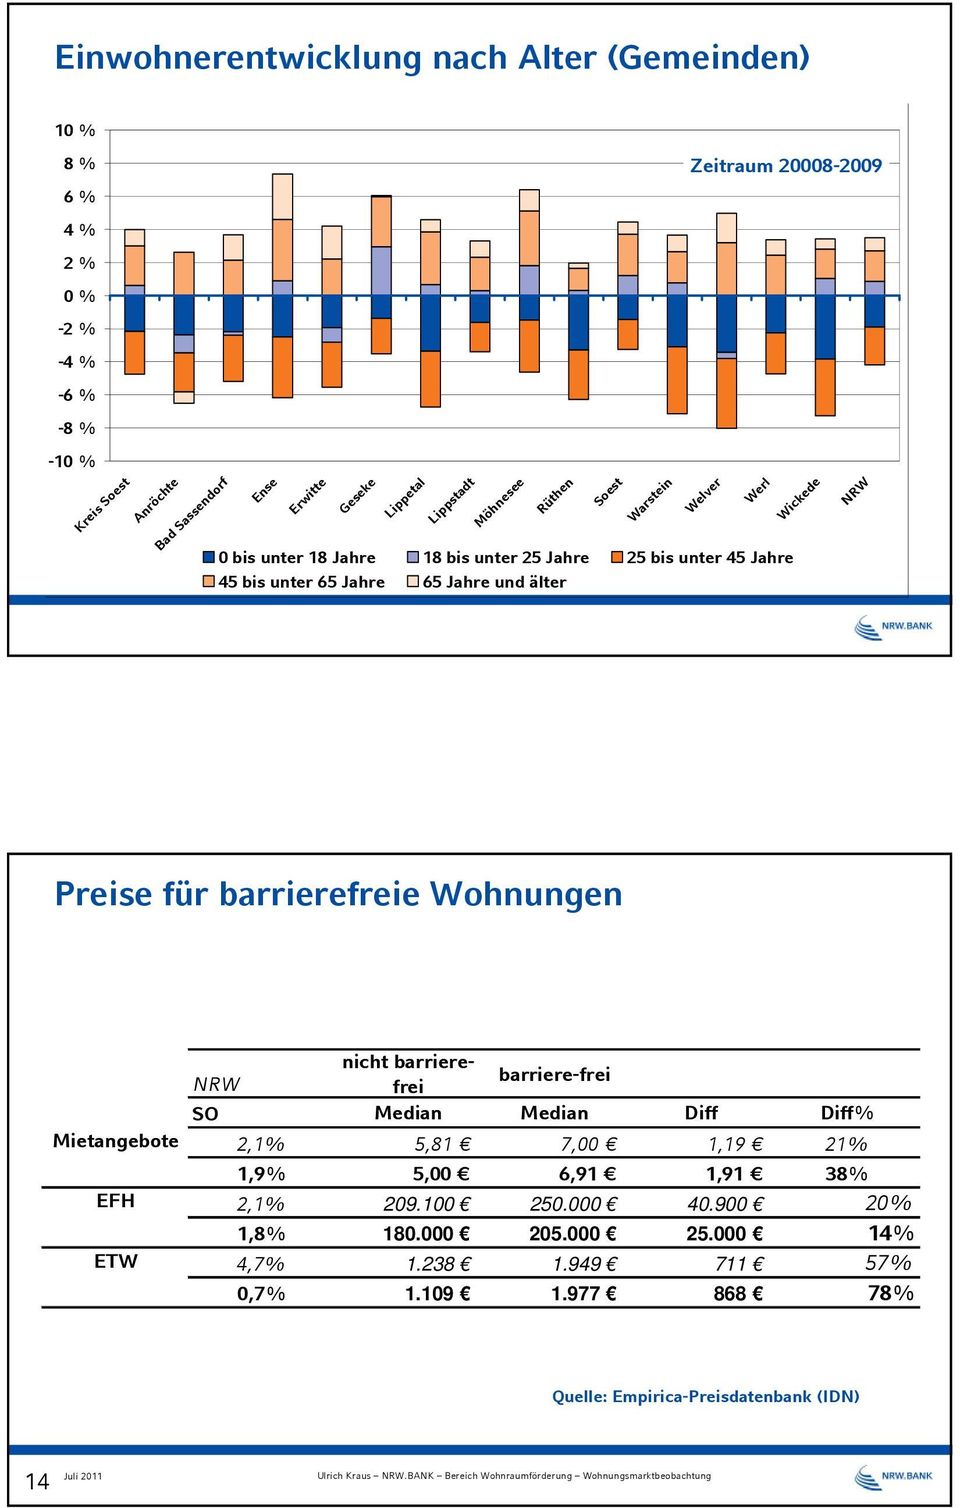 und älter Werl Wickede NRW Preise für barrierefreie Wohnungen Mietangebote EFH ETW NRW nicht barrierefrei barriere-frei SO Median Median Diff Diff% 2,1% 5,81